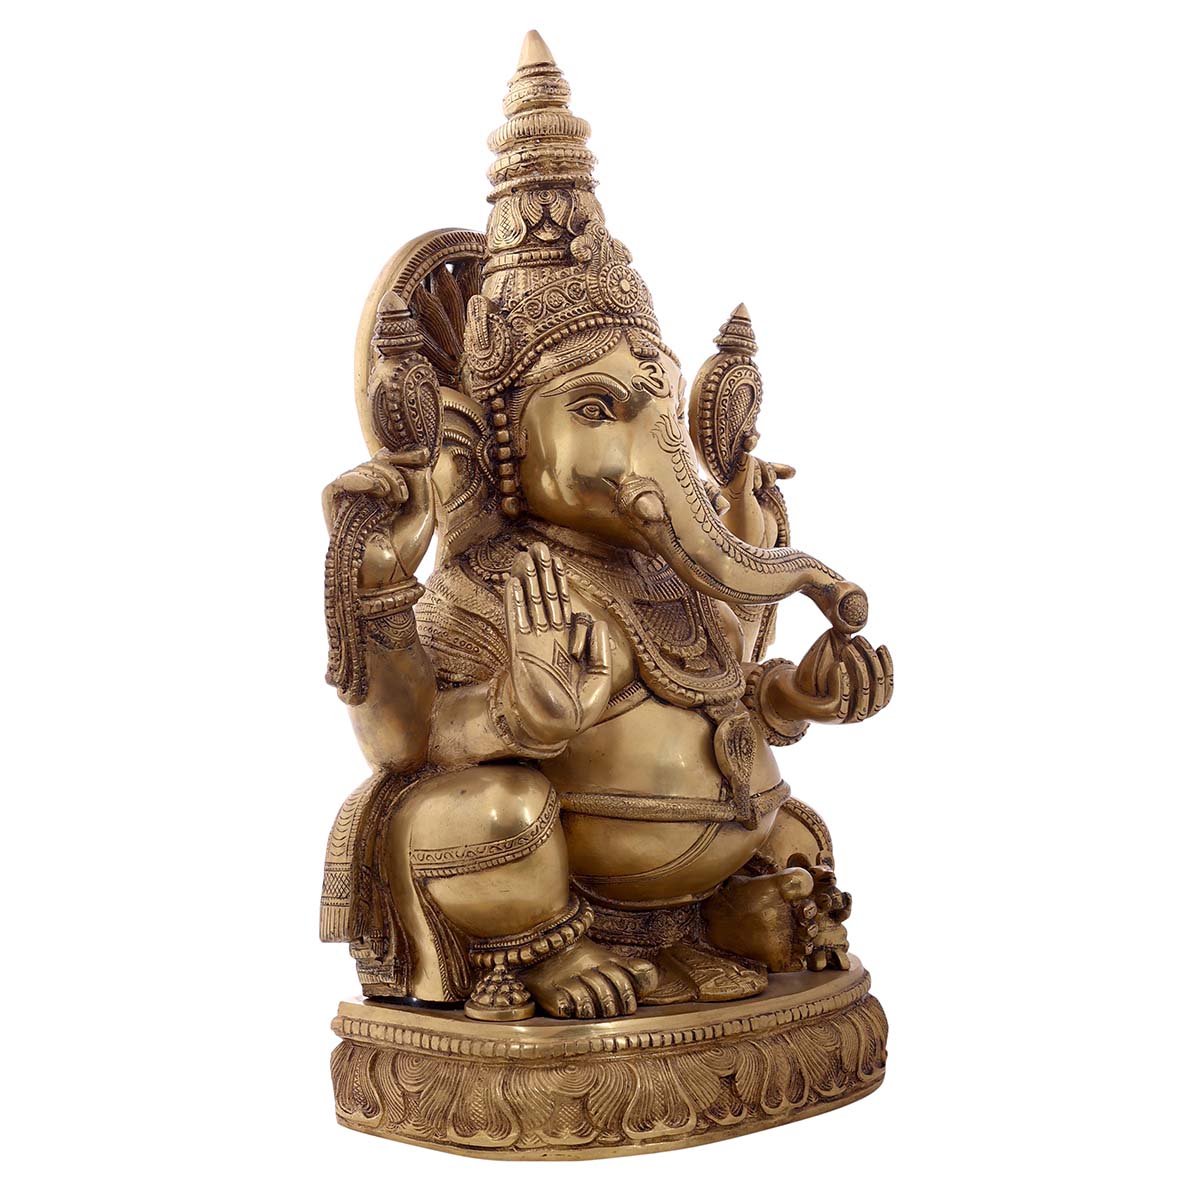 Lord Ganesha sitting Idol made of Pure Brass - 13 x 8 x 21 Inch, 22.7 Kg